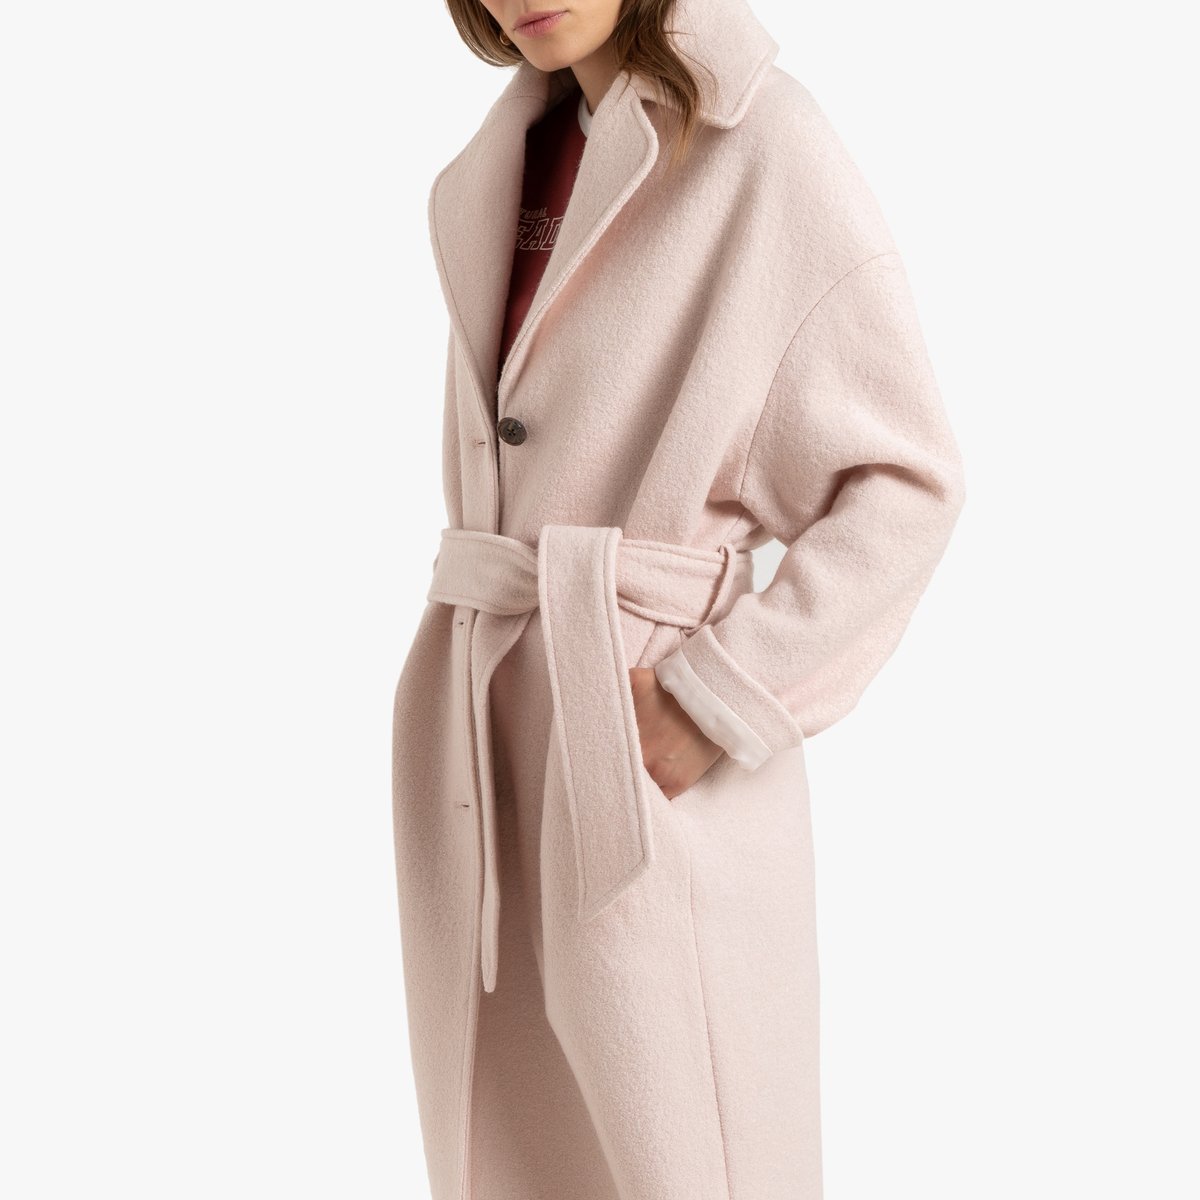 Пальто La Redoute Средней длины 42 (FR) - 48 (RUS) розовый, размер 42 (FR) - 48 (RUS) Средней длины 42 (FR) - 48 (RUS) розовый - фото 3